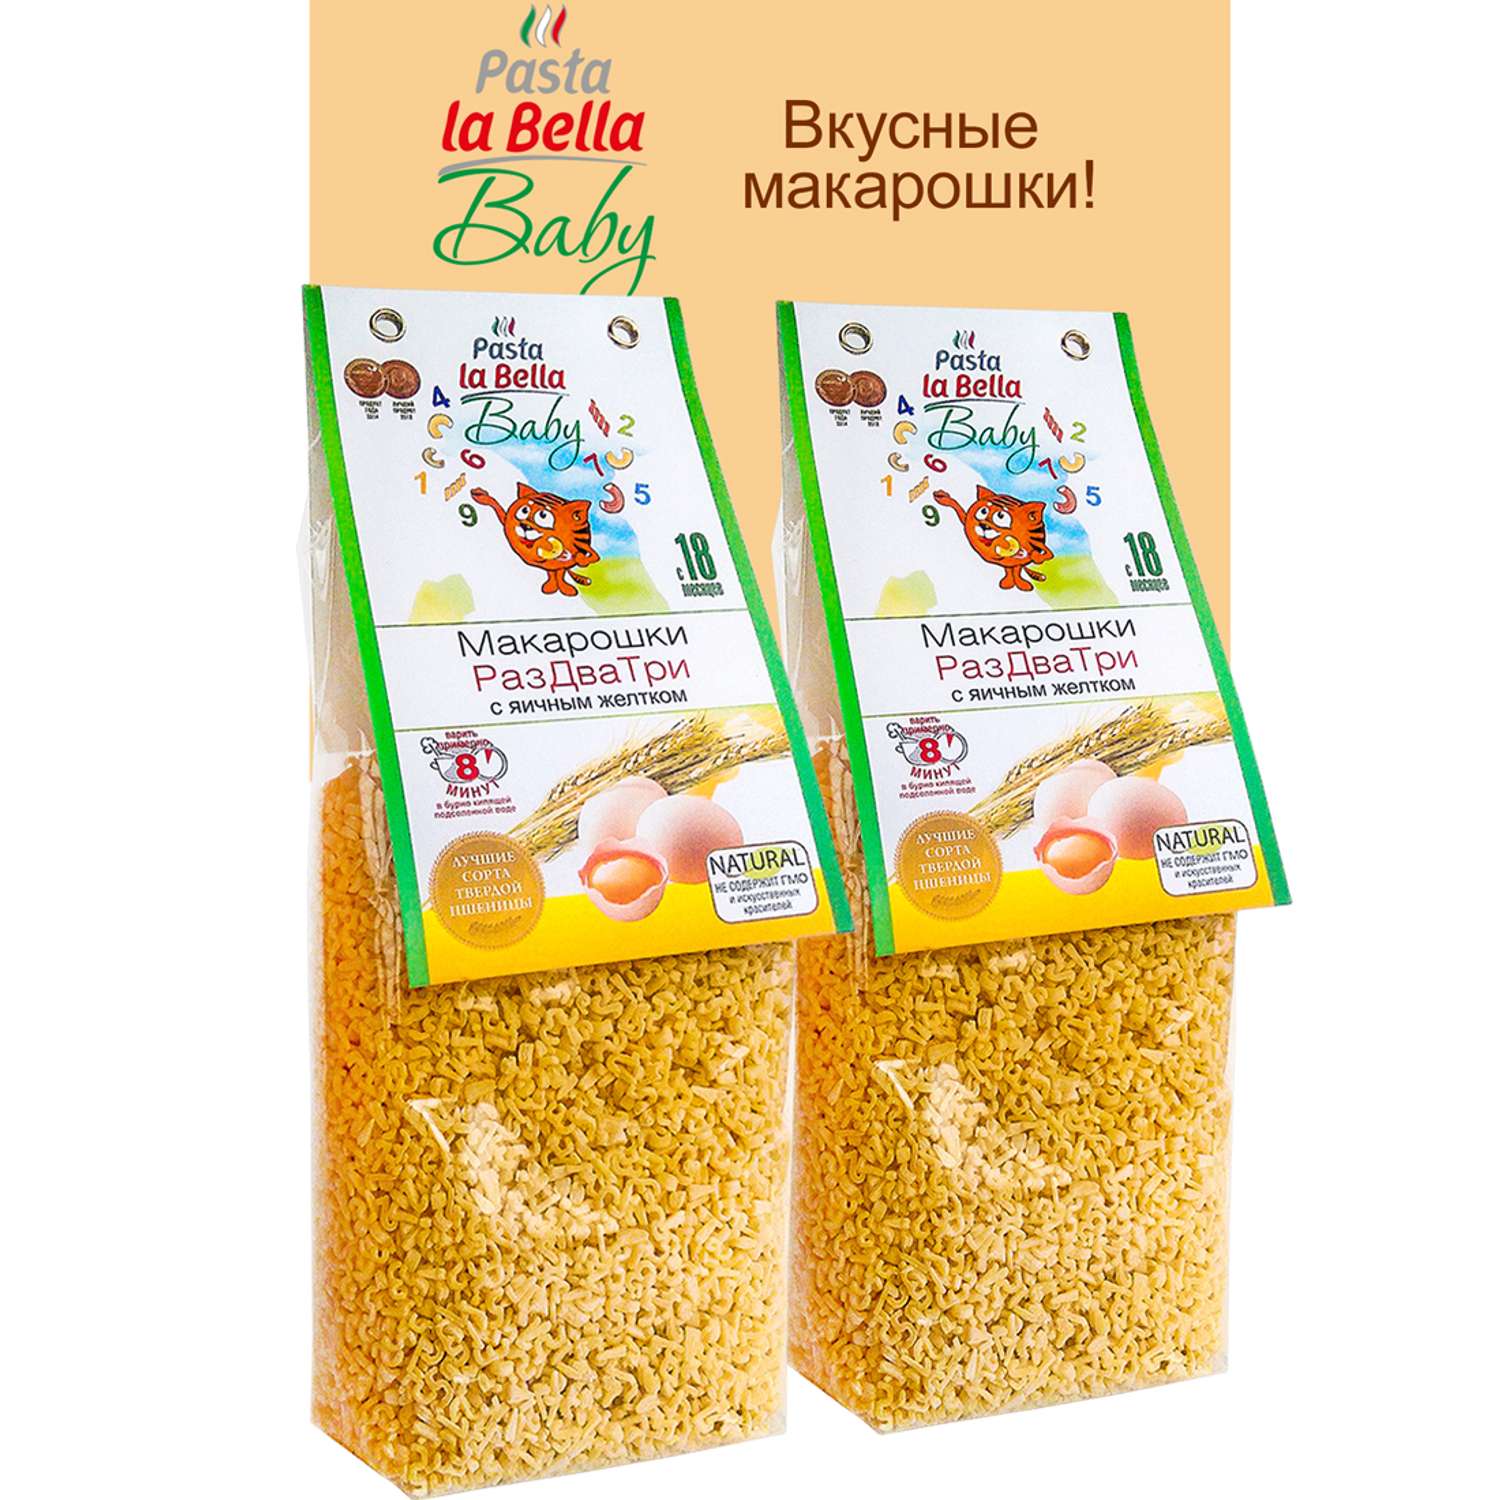 Макароны детские Pasta la Bella Baby макарошки раздватри с желтком 2 упаковки - фото 1